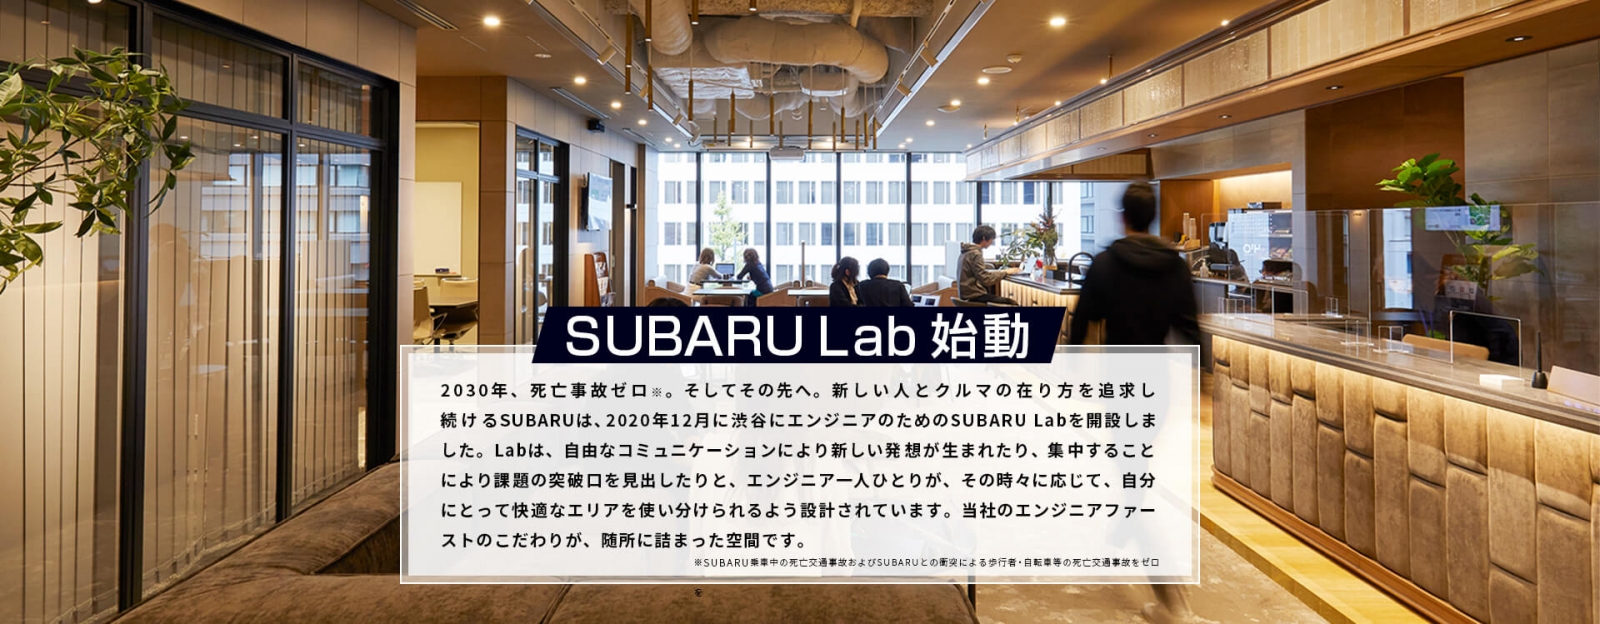 SUBARU Lab始動　2030年、死亡交通事故ゼロ※。そしてその先へ。新しい人とクルマの在り方を追求し続けるSUBARUは、2020年12月に渋谷にエンジニアのためのSUBARU Labを開設しました。Labは、自由なコミュニケーションにより新しい発想が生まれたり、集中することにより課題の突破口を見出したりと、エンジニア一人ひとりが、その時々に応じて、自分にとって快適なエリアを使い分けられるよう設計されています。当社のエンジニアファーストのこだわりが、随所に詰まった空間です。　※SUBARU乗車中の死亡交通事故およびSUBARUとの衝突による歩行者・自転車等の死亡交通事故をゼロ